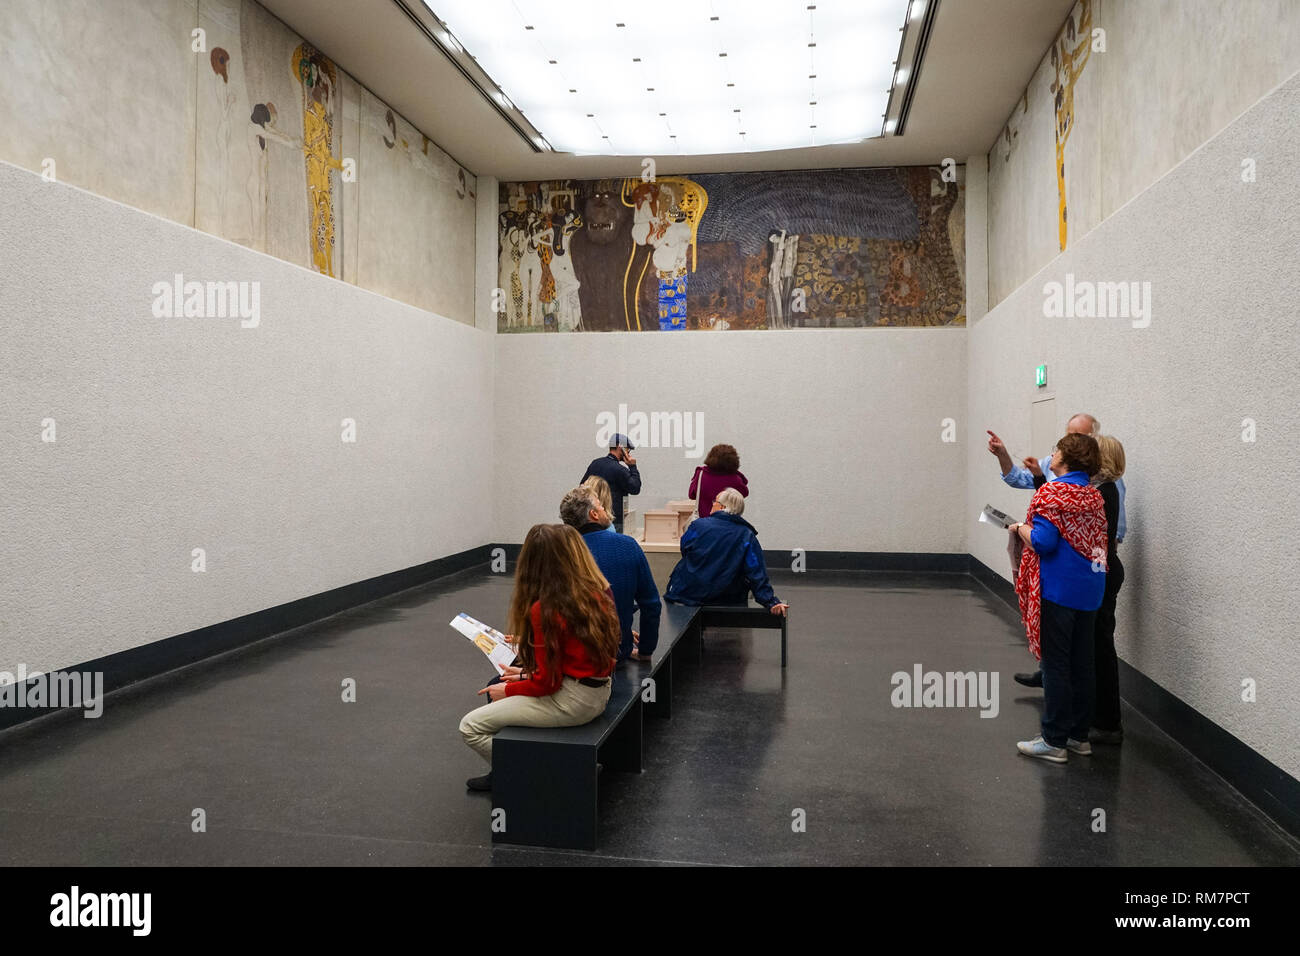 Les touristes à la recherche à la Frise Beethoven de Gustav Klimt peinture dans le bâtiment de la Sécession à Vienne, Autriche Banque D'Images